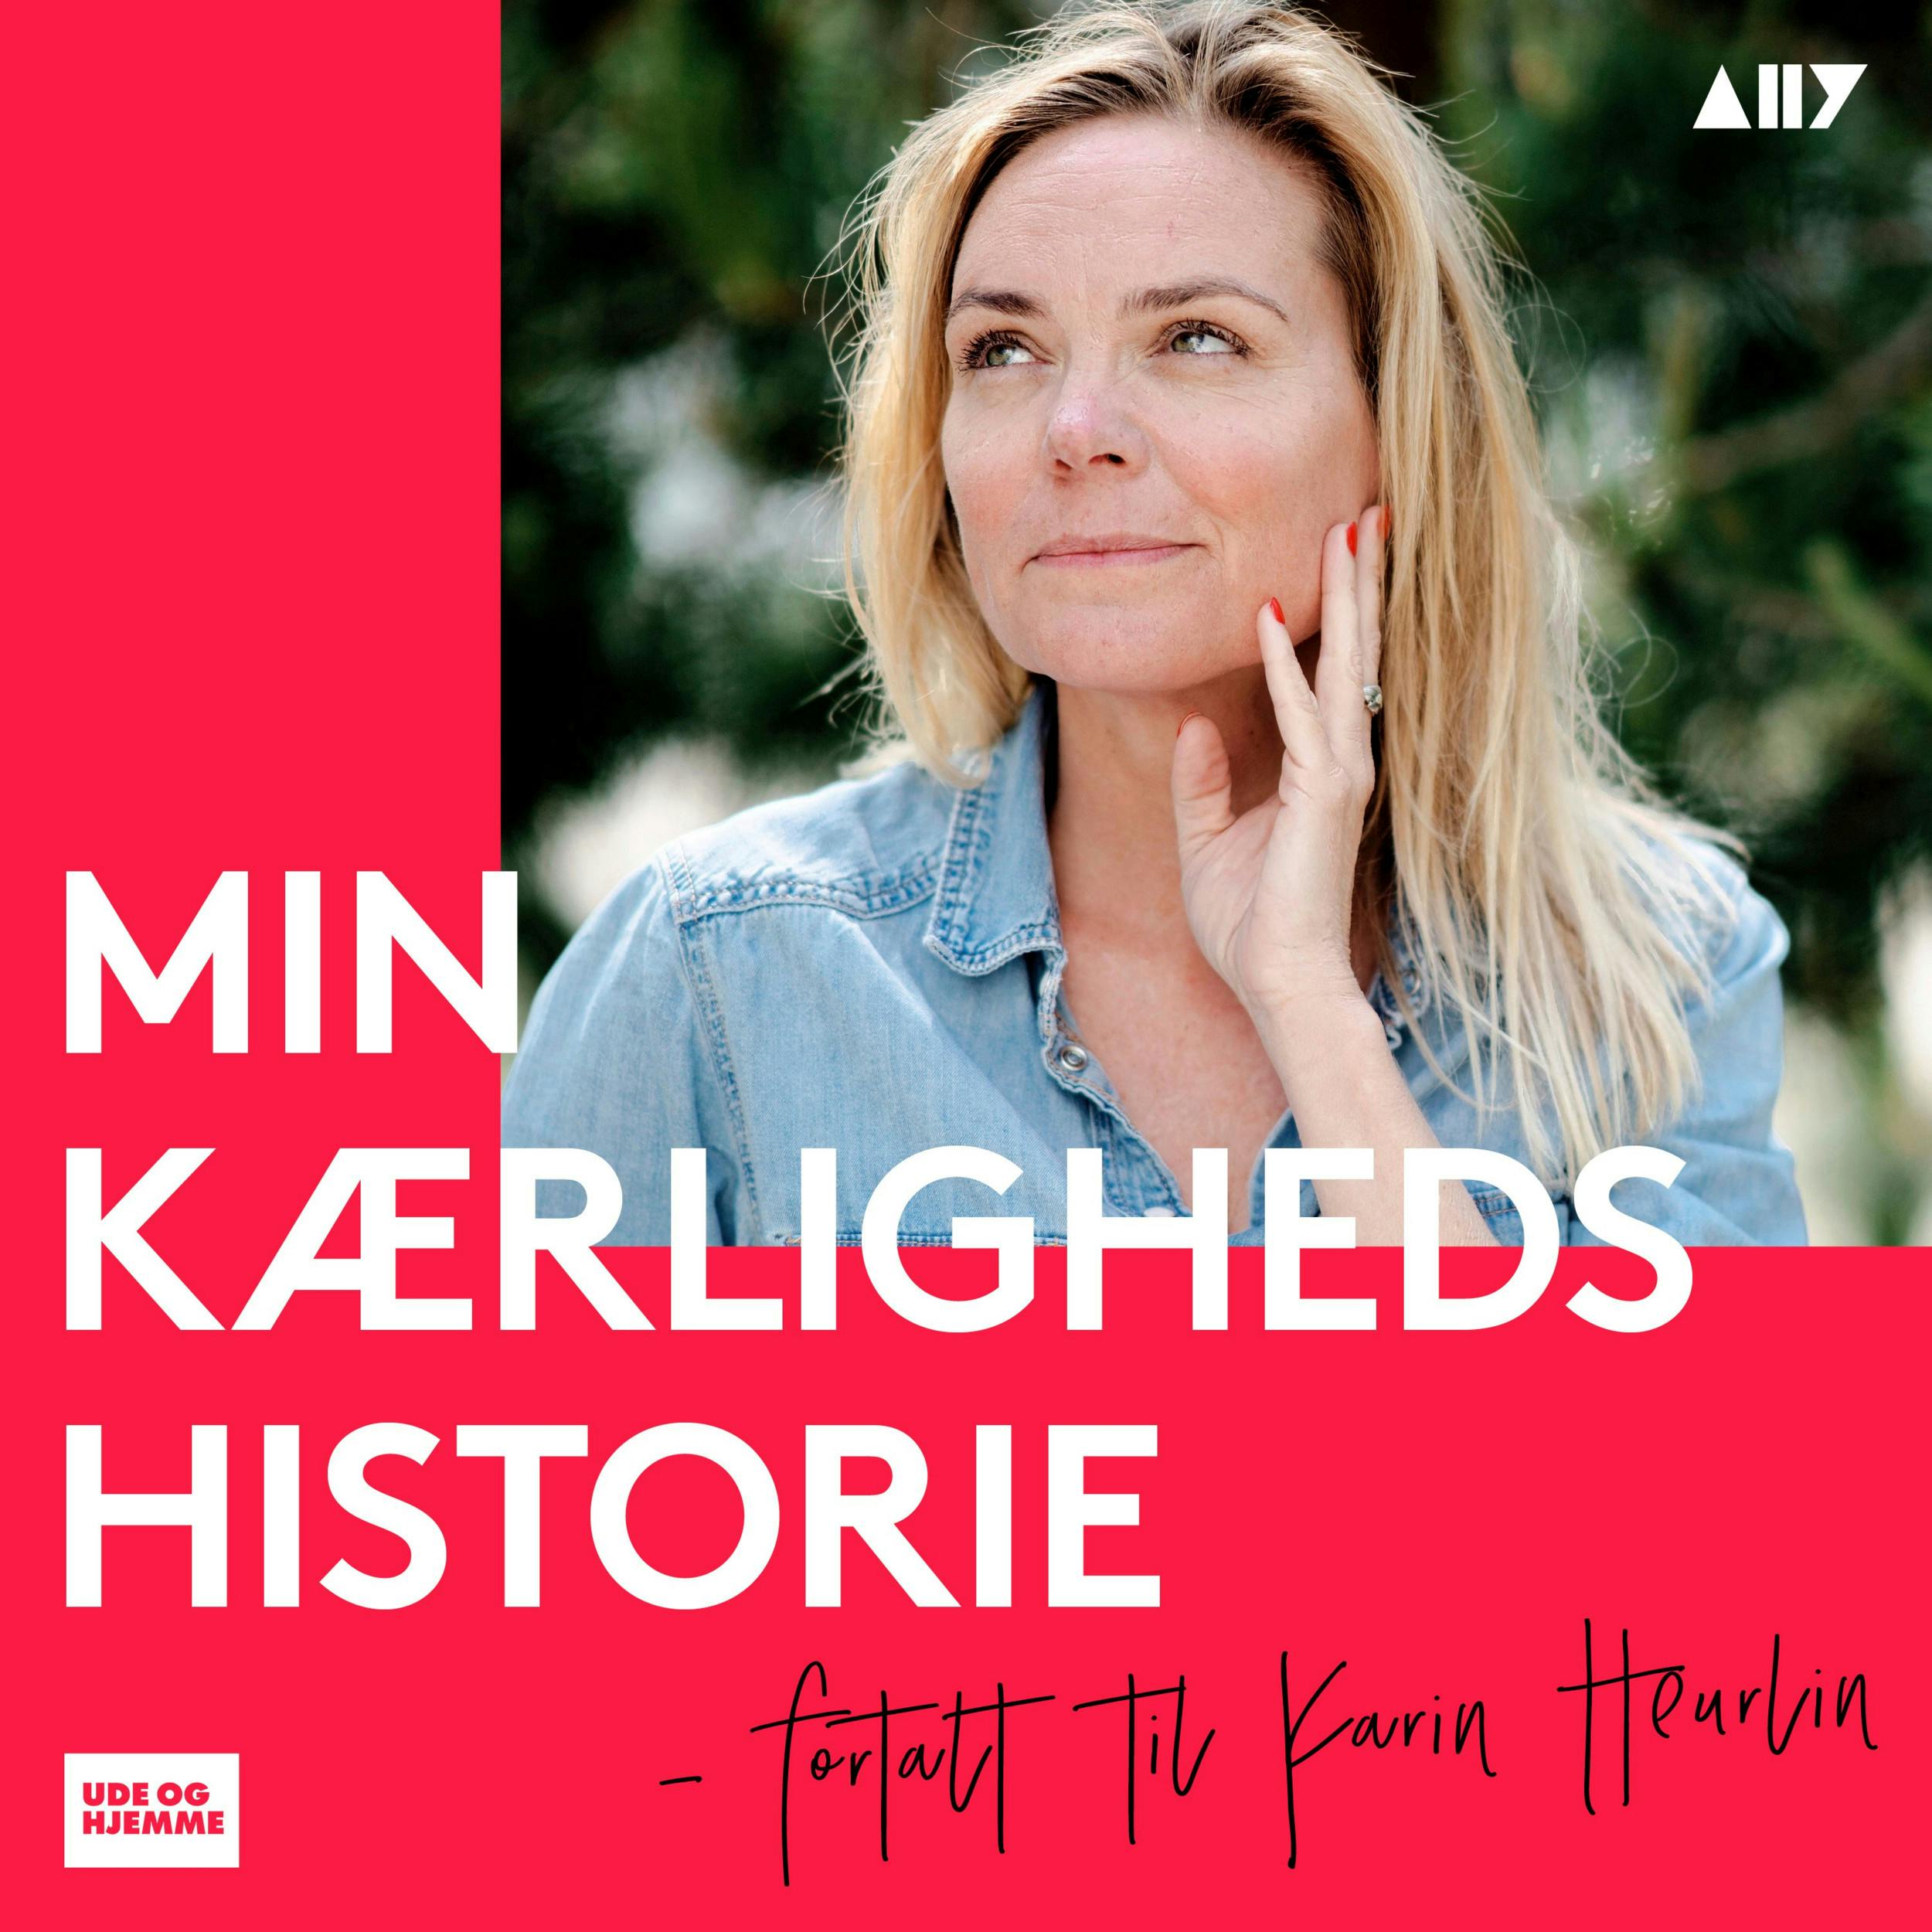 Man bliver glad af at lytte til Karen-Marie. Det kan du nu gøre helt gratis i podcasten ”Min kærlighedshistorie” med forfatter og journalist Karin Heurlin.